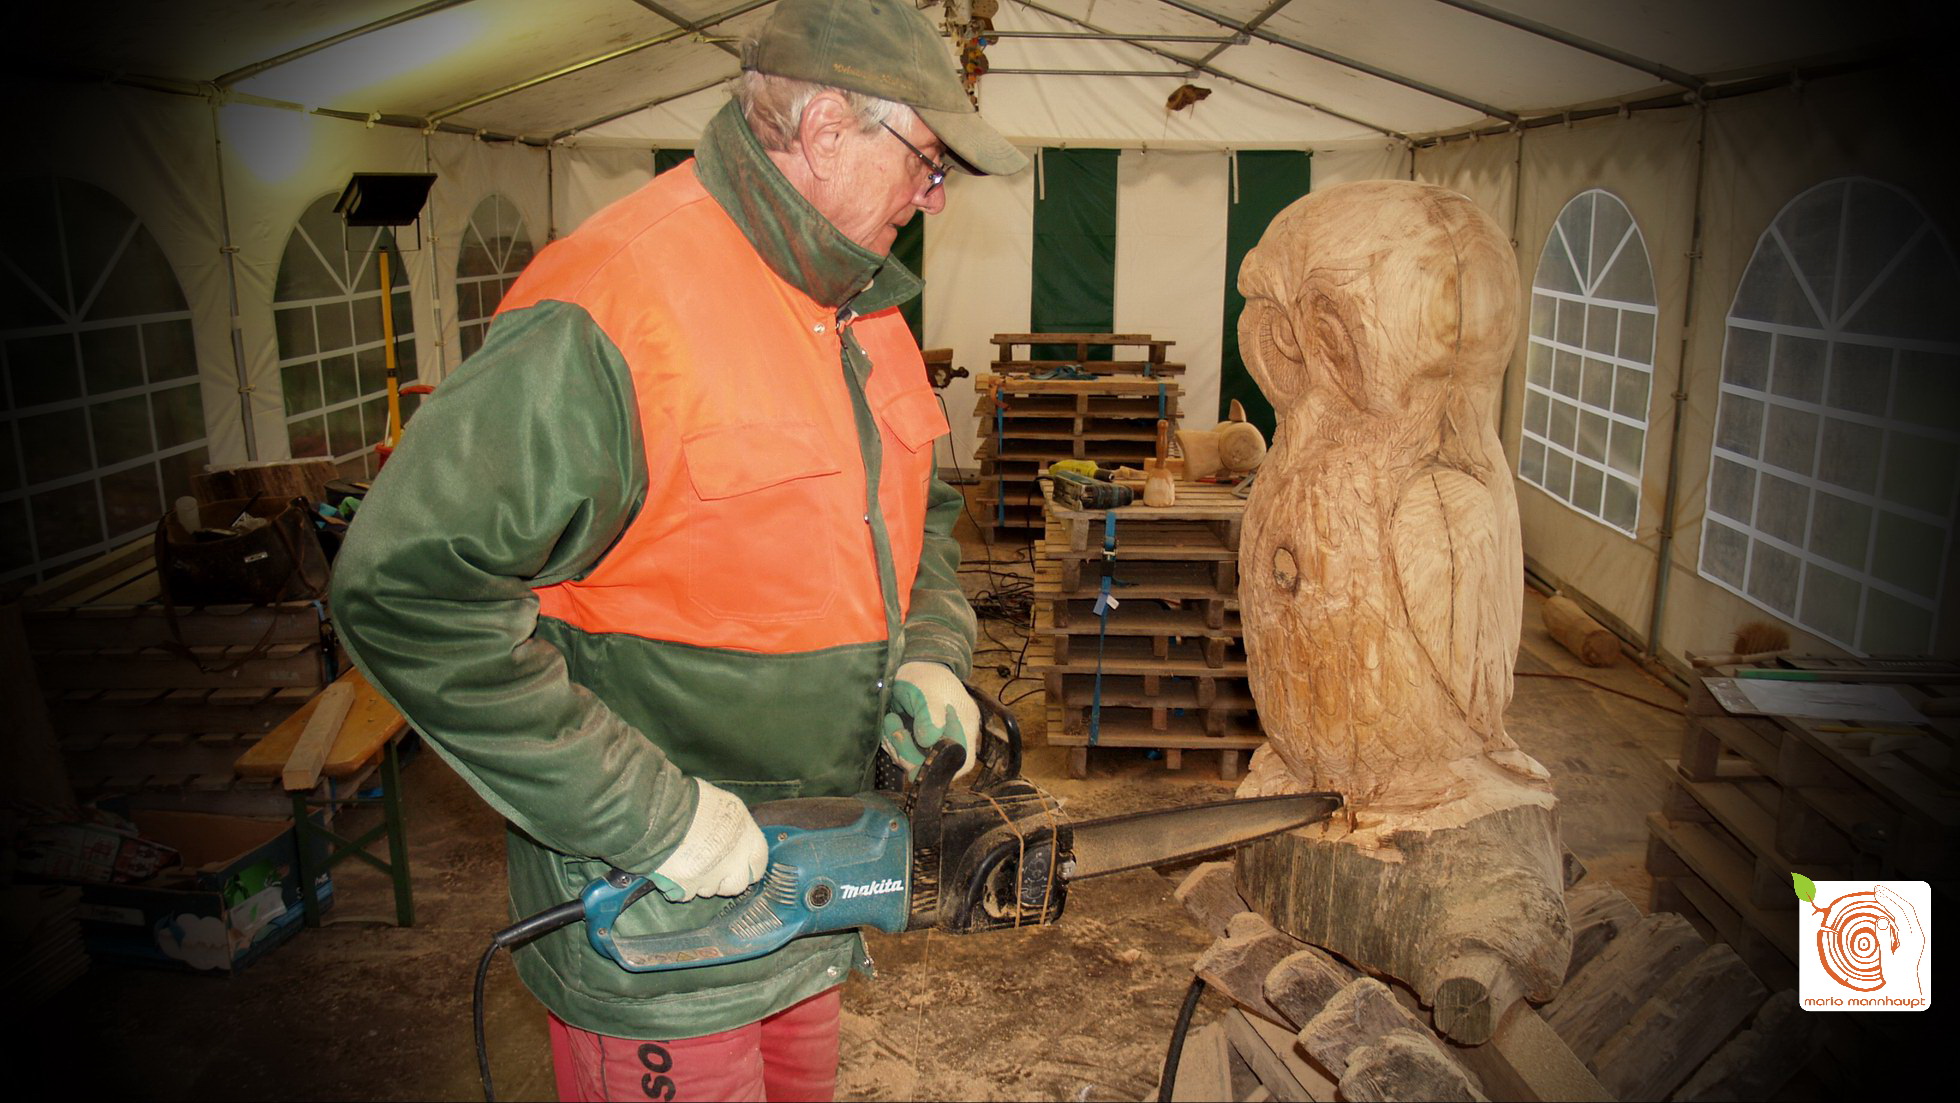 Carving mit der Kettensäge lernen